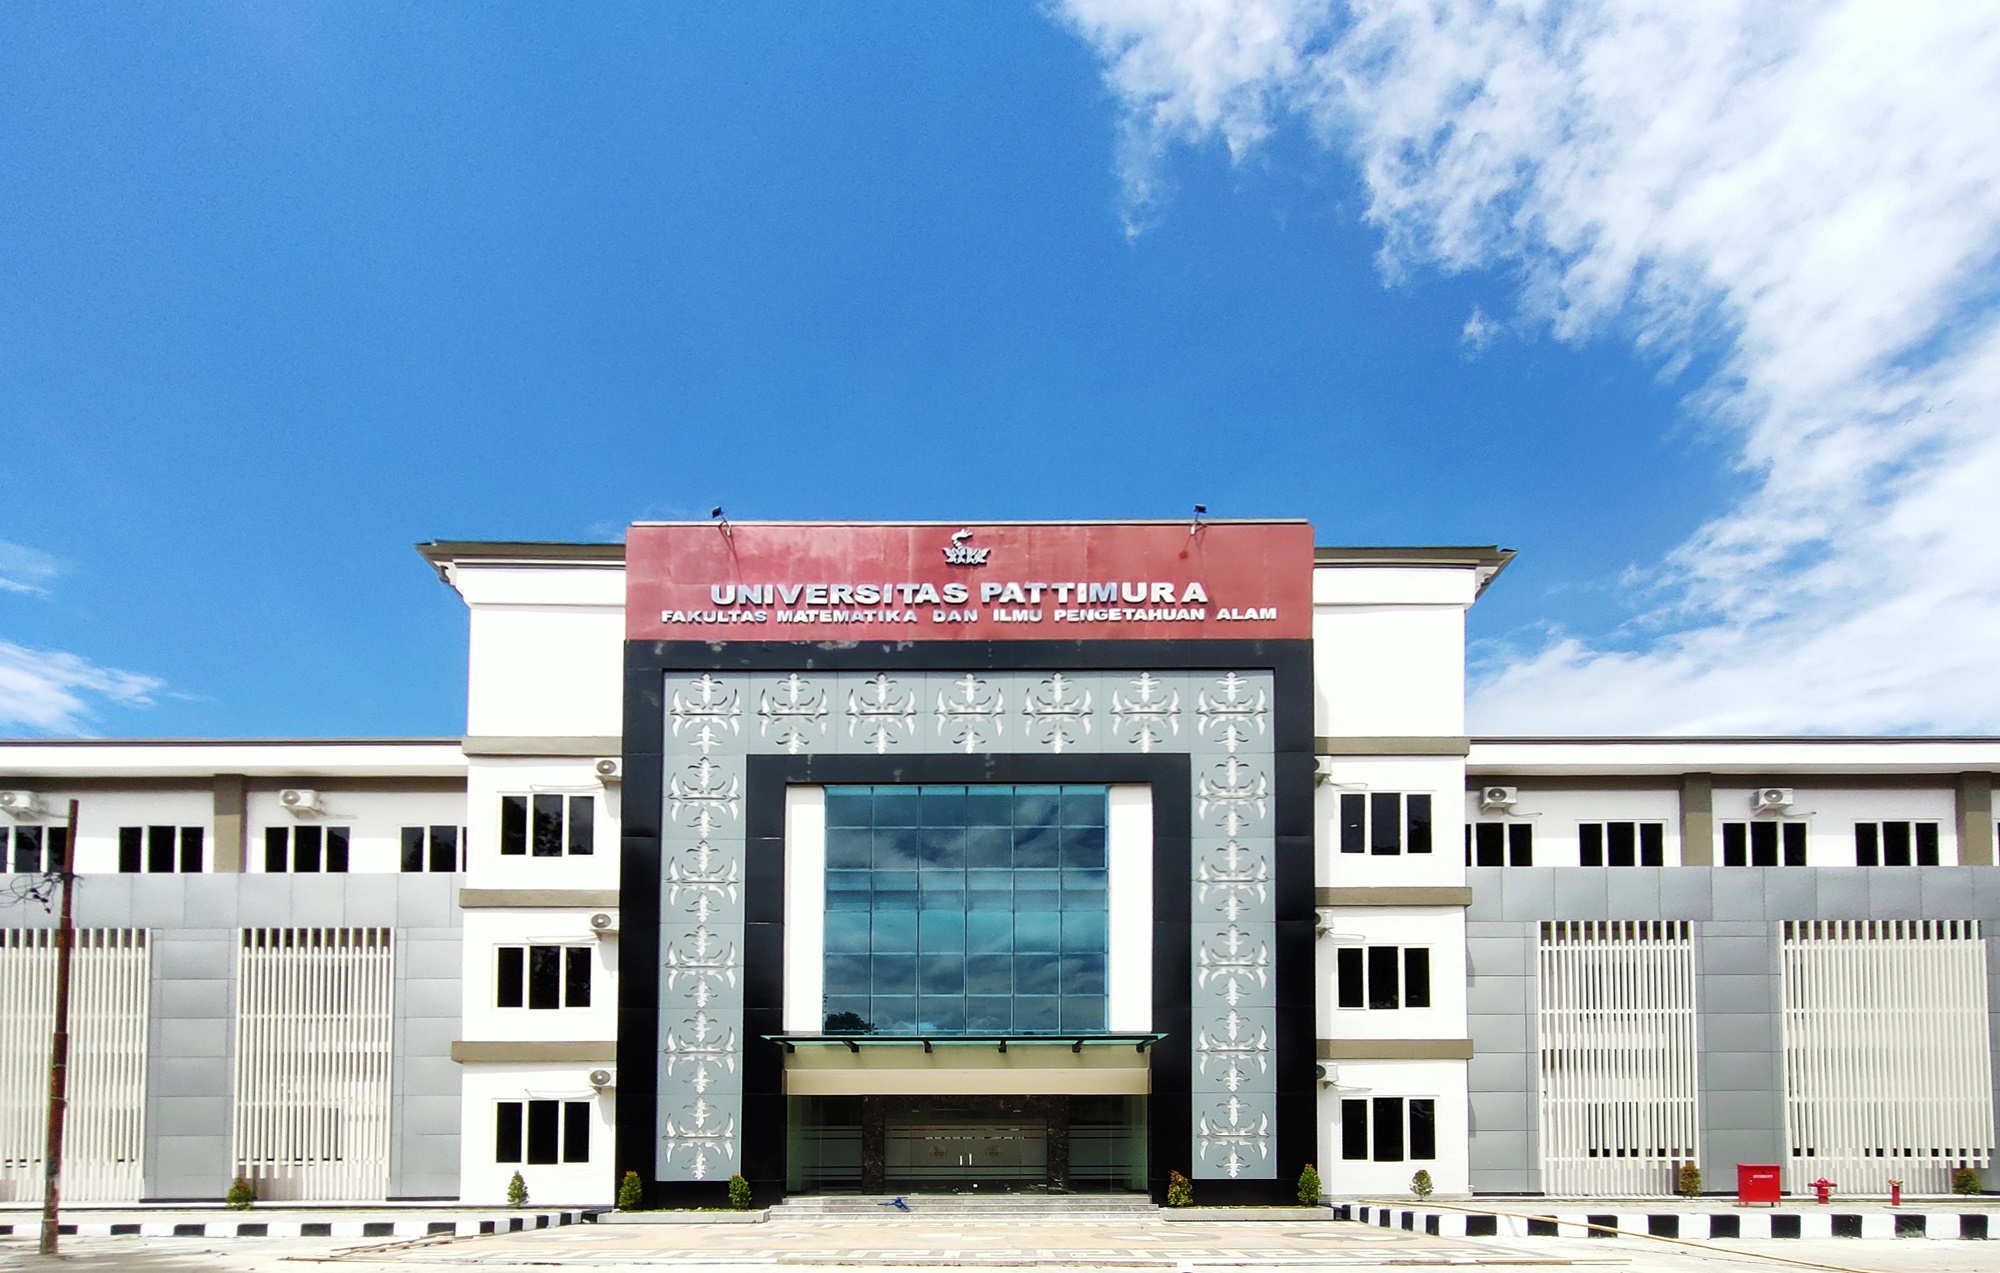 Fakultas Matematika dan Ilmu Pengetahuan Alam Universitas Pattimura